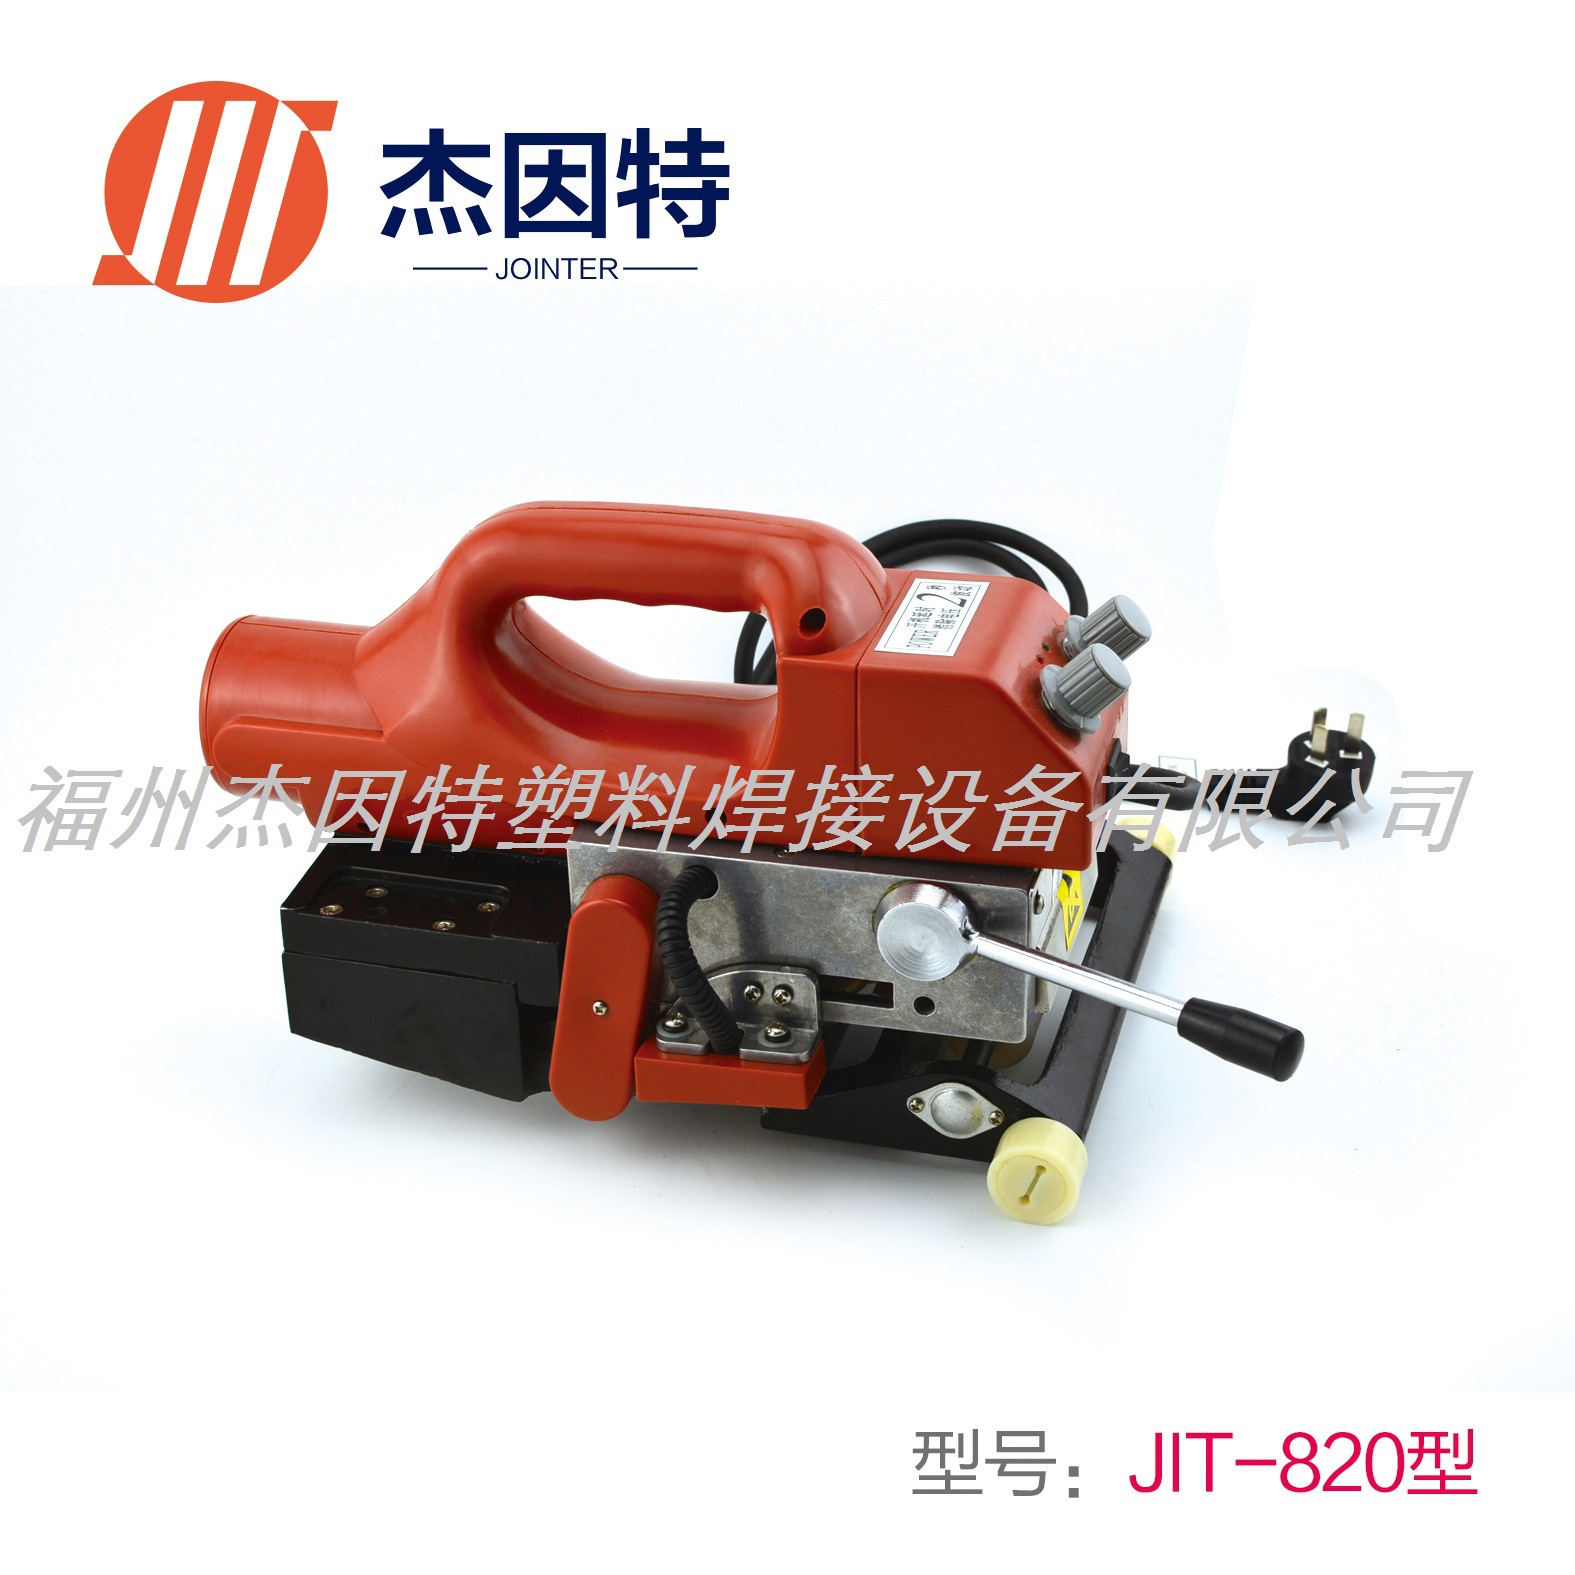 【包邮】杰因特土工膜焊接机爬焊机磁焊枪超声波防渗膜JIIT-821